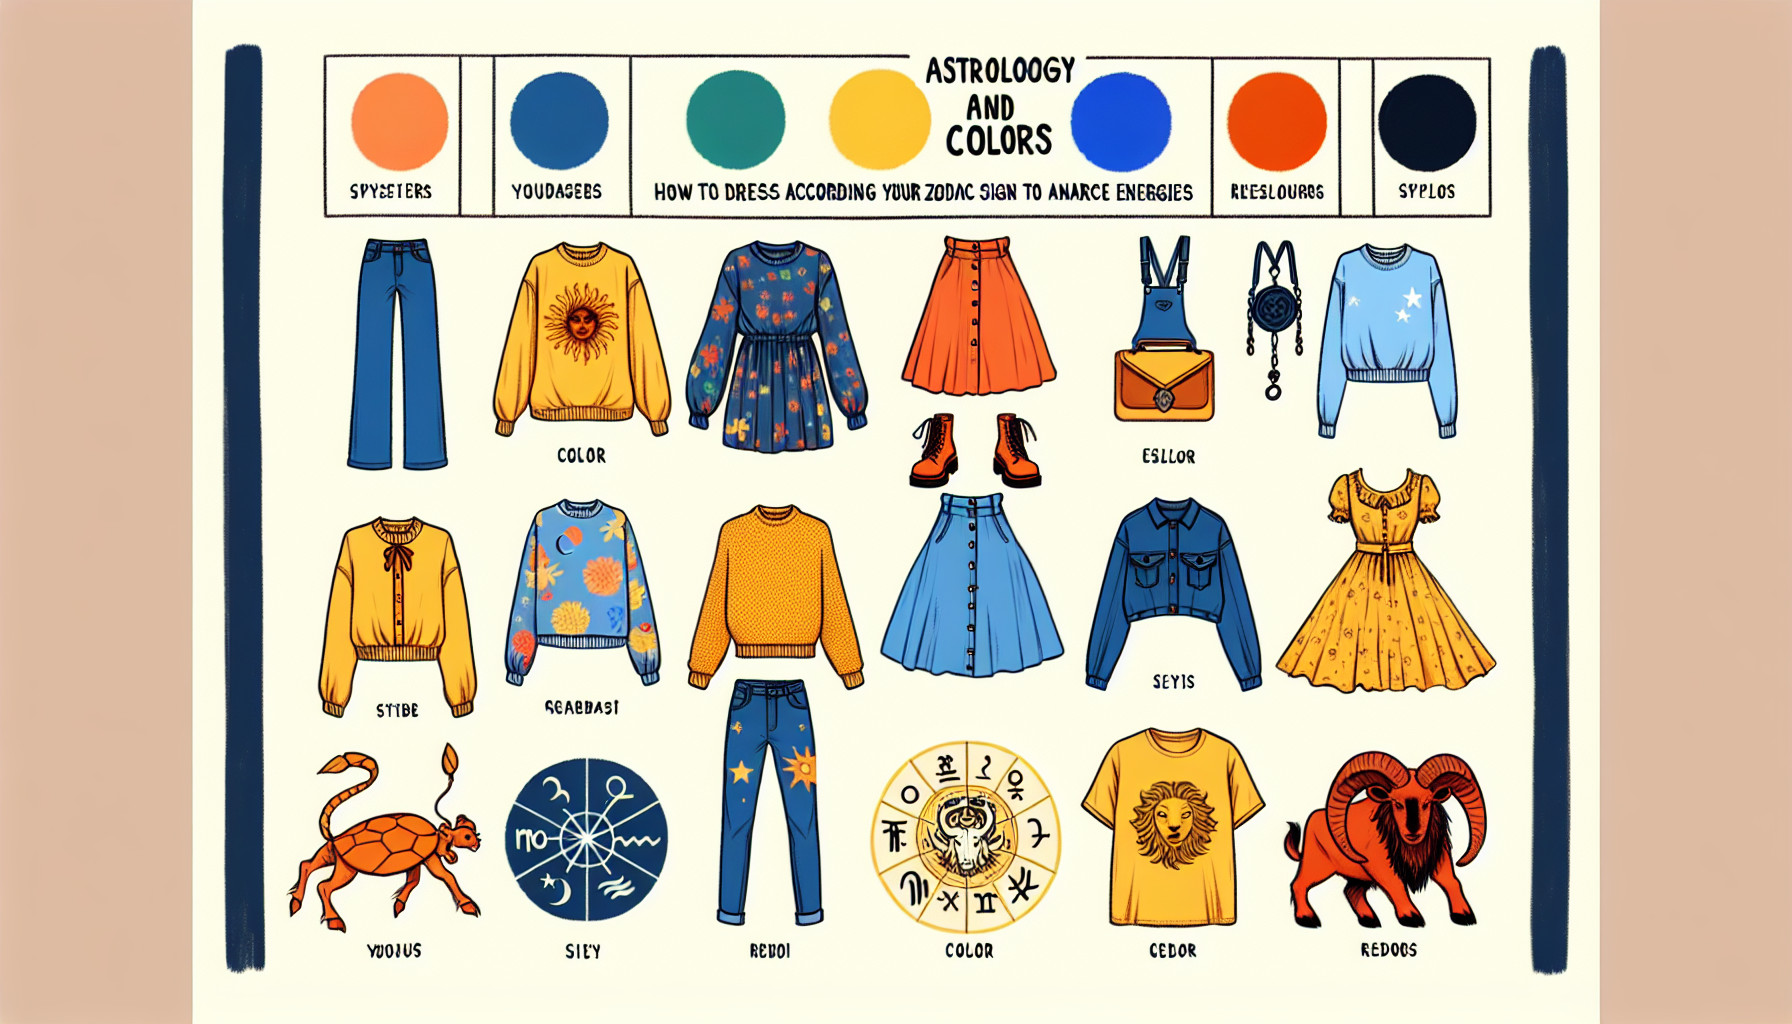 Astrología Y Colores: Cómo Vestir Según Tu Signo Para Potenciar Energías